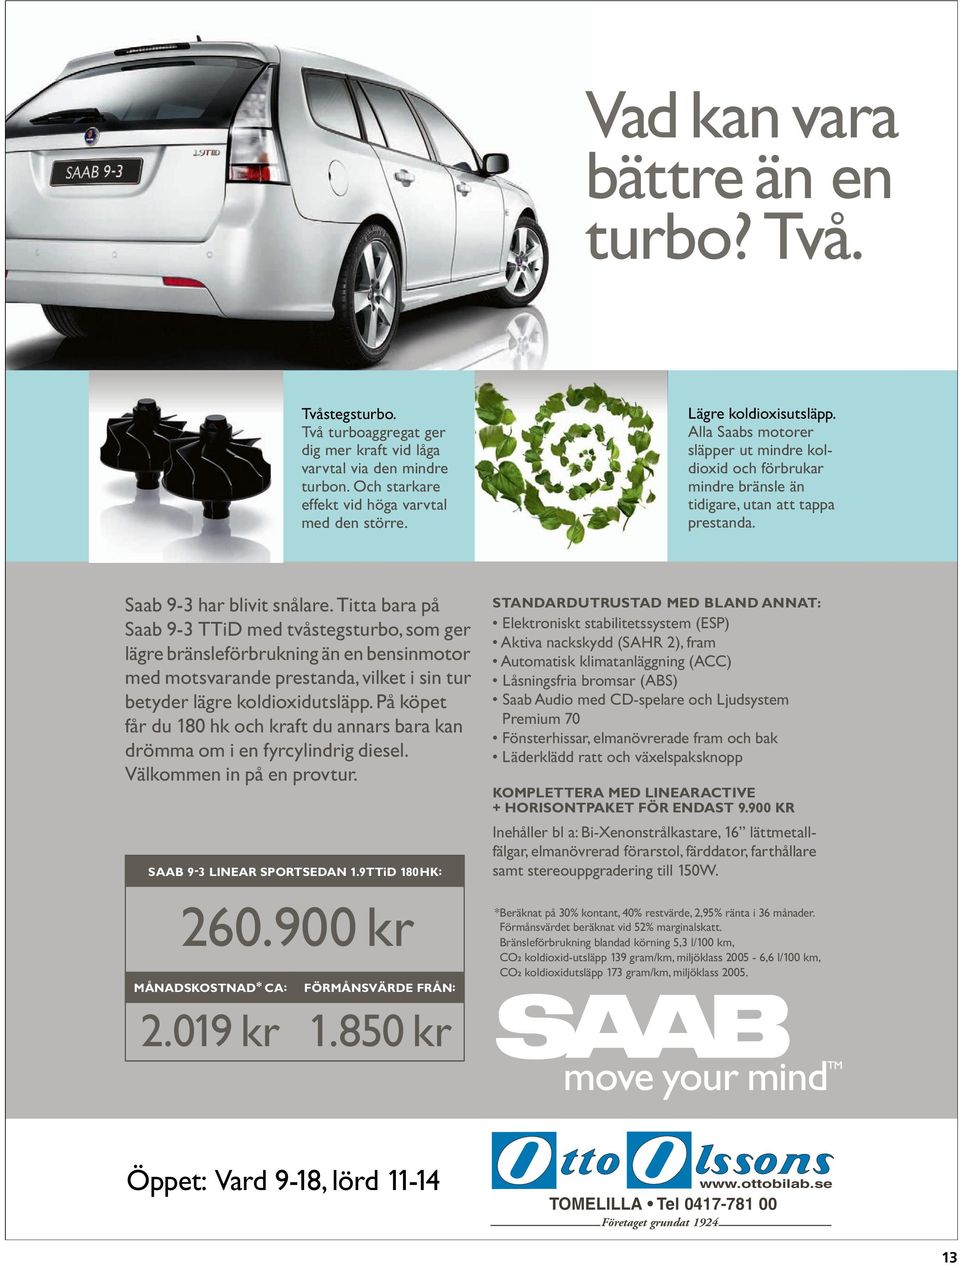 Titta bara på Saab 9-3 TTiD med tvåstegsturbo, som ger lägre bränsleförbrukning än en bensinmotor med motsvarande prestanda, vilket i sin tur betyder lägre koldioxidutsläpp.